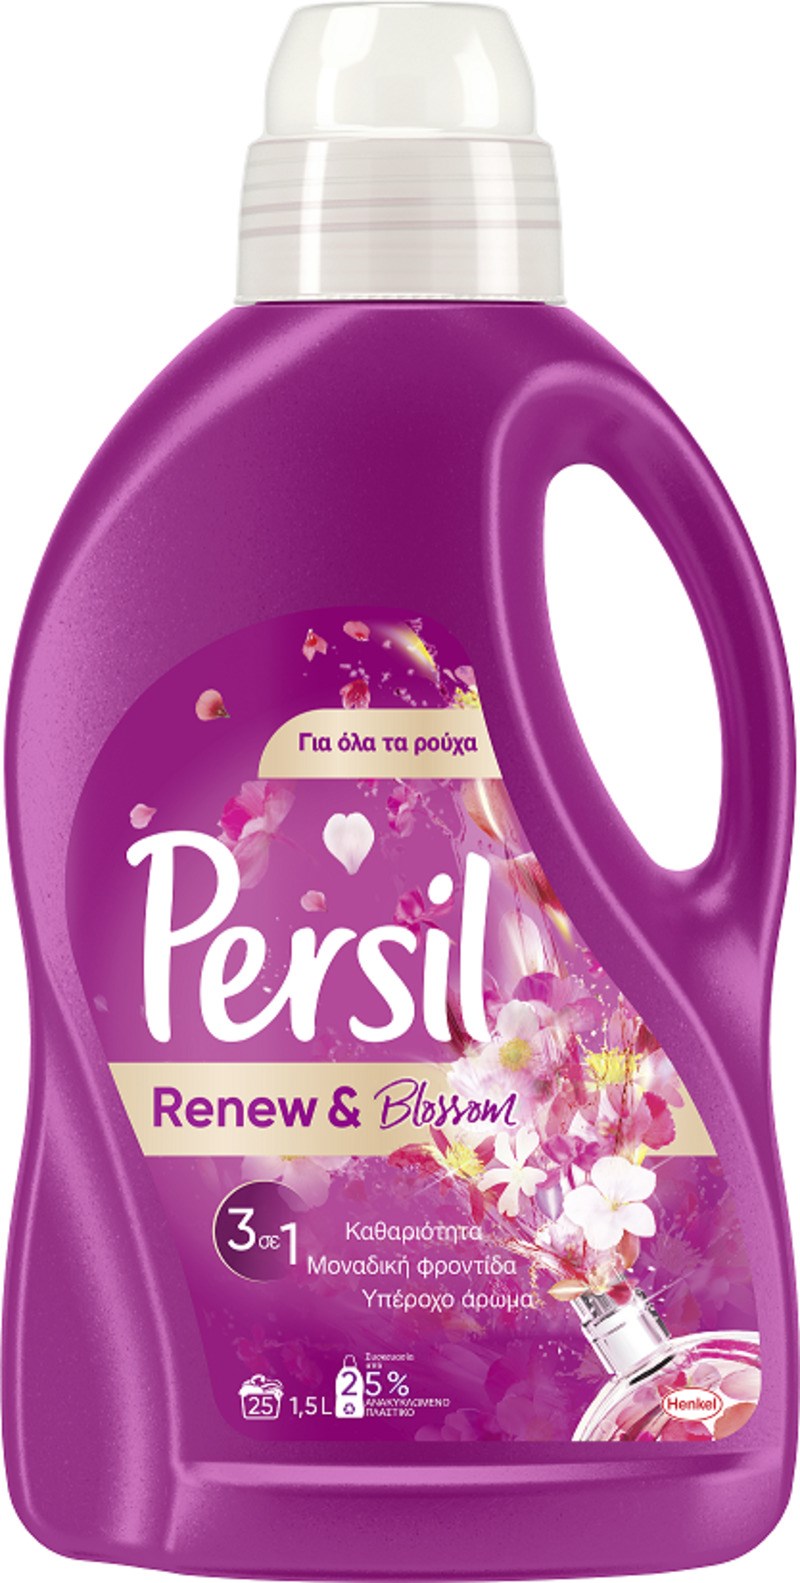 Οι πιο γλυκιές αναμνήσεις ζωντανεύουν ξανά με το σαγηνευτικό άρωμα του νέου Persil Renew & Blossom